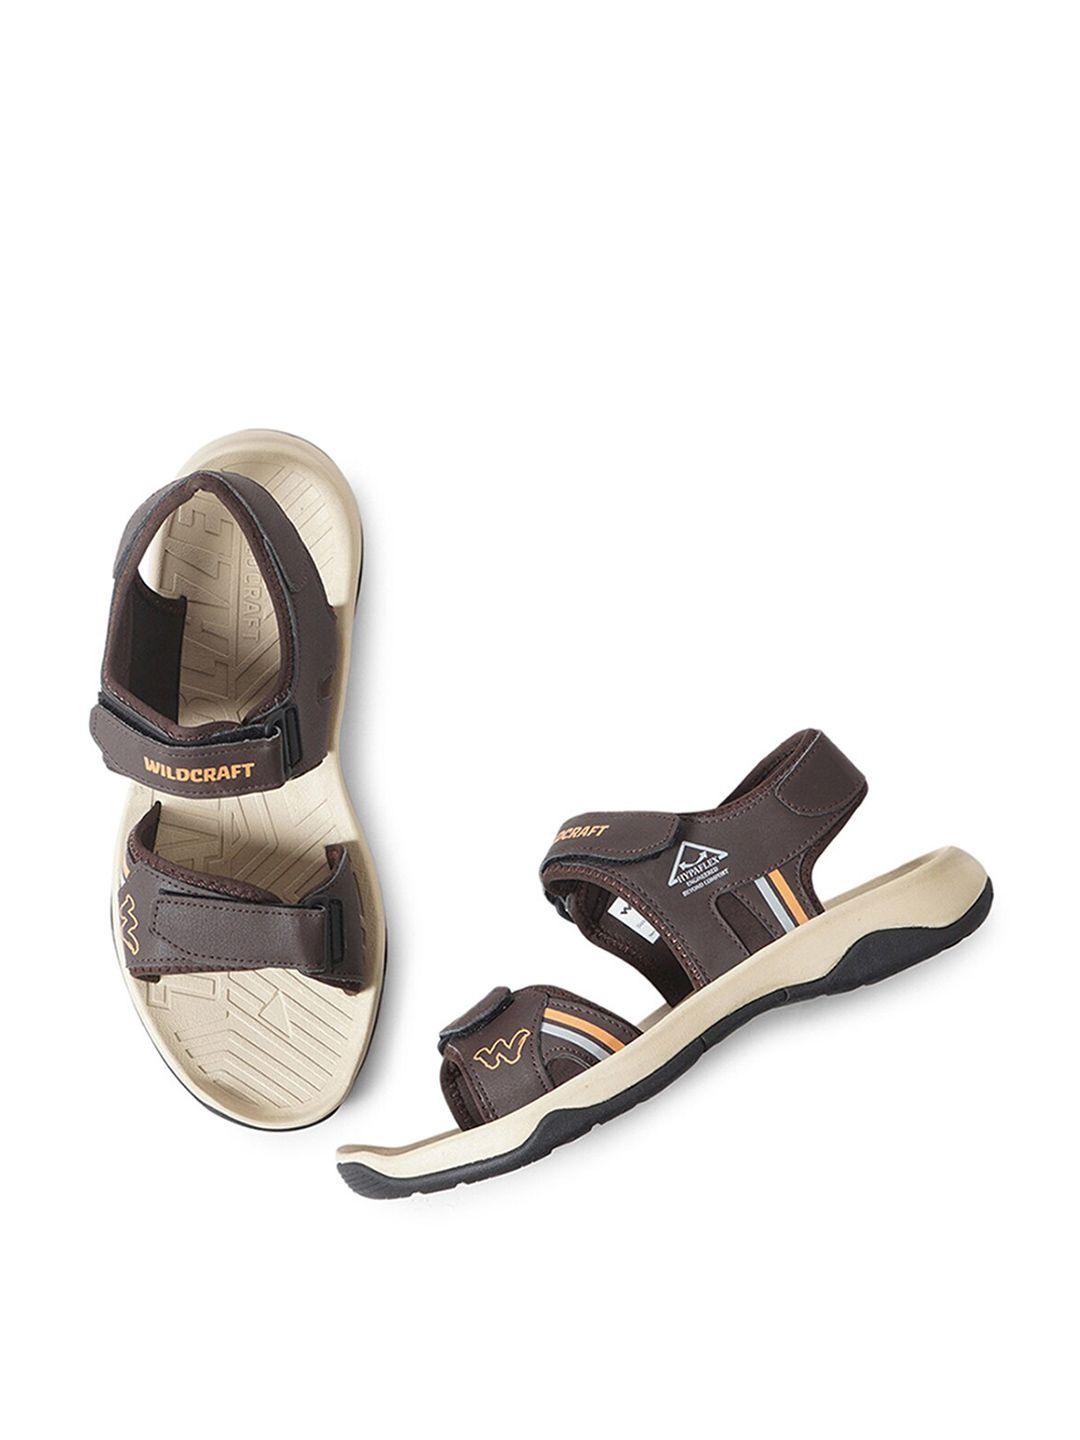 wildcraft men brown & beige comfort sandals